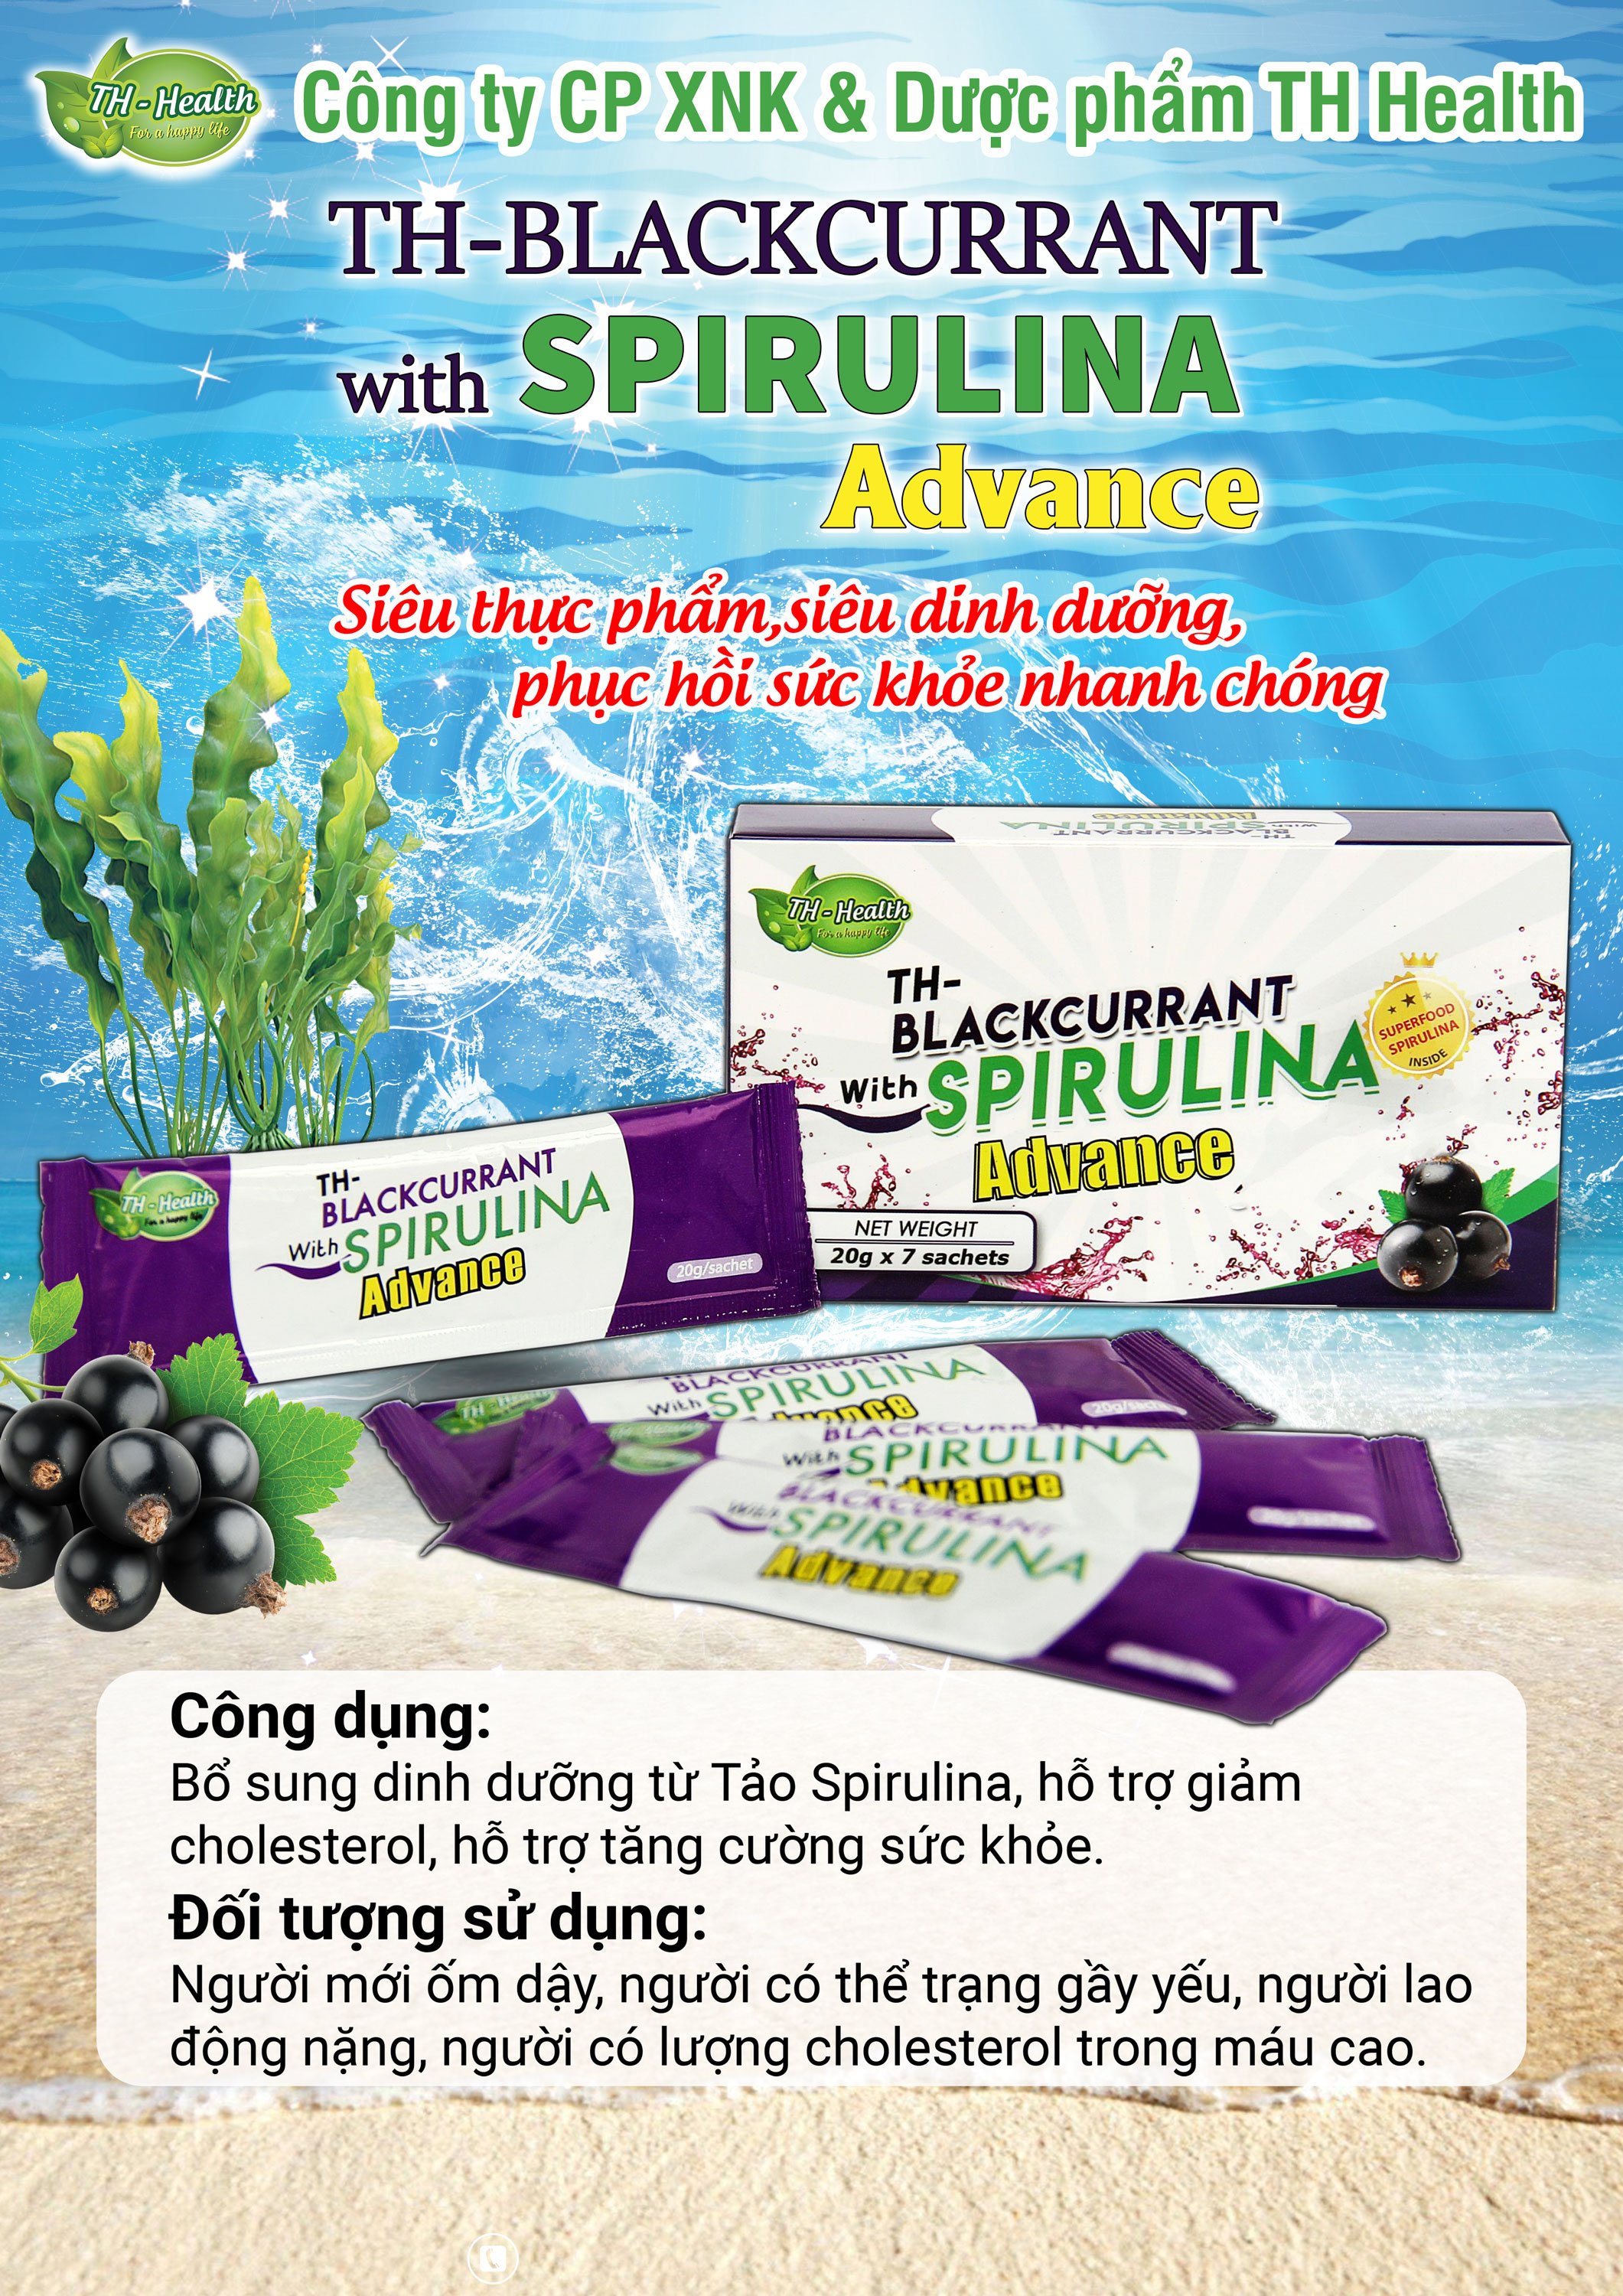 Thực phẩm bảo vệ sức khỏe TH-Blackcurrant with Spirulina Advance- TẢO